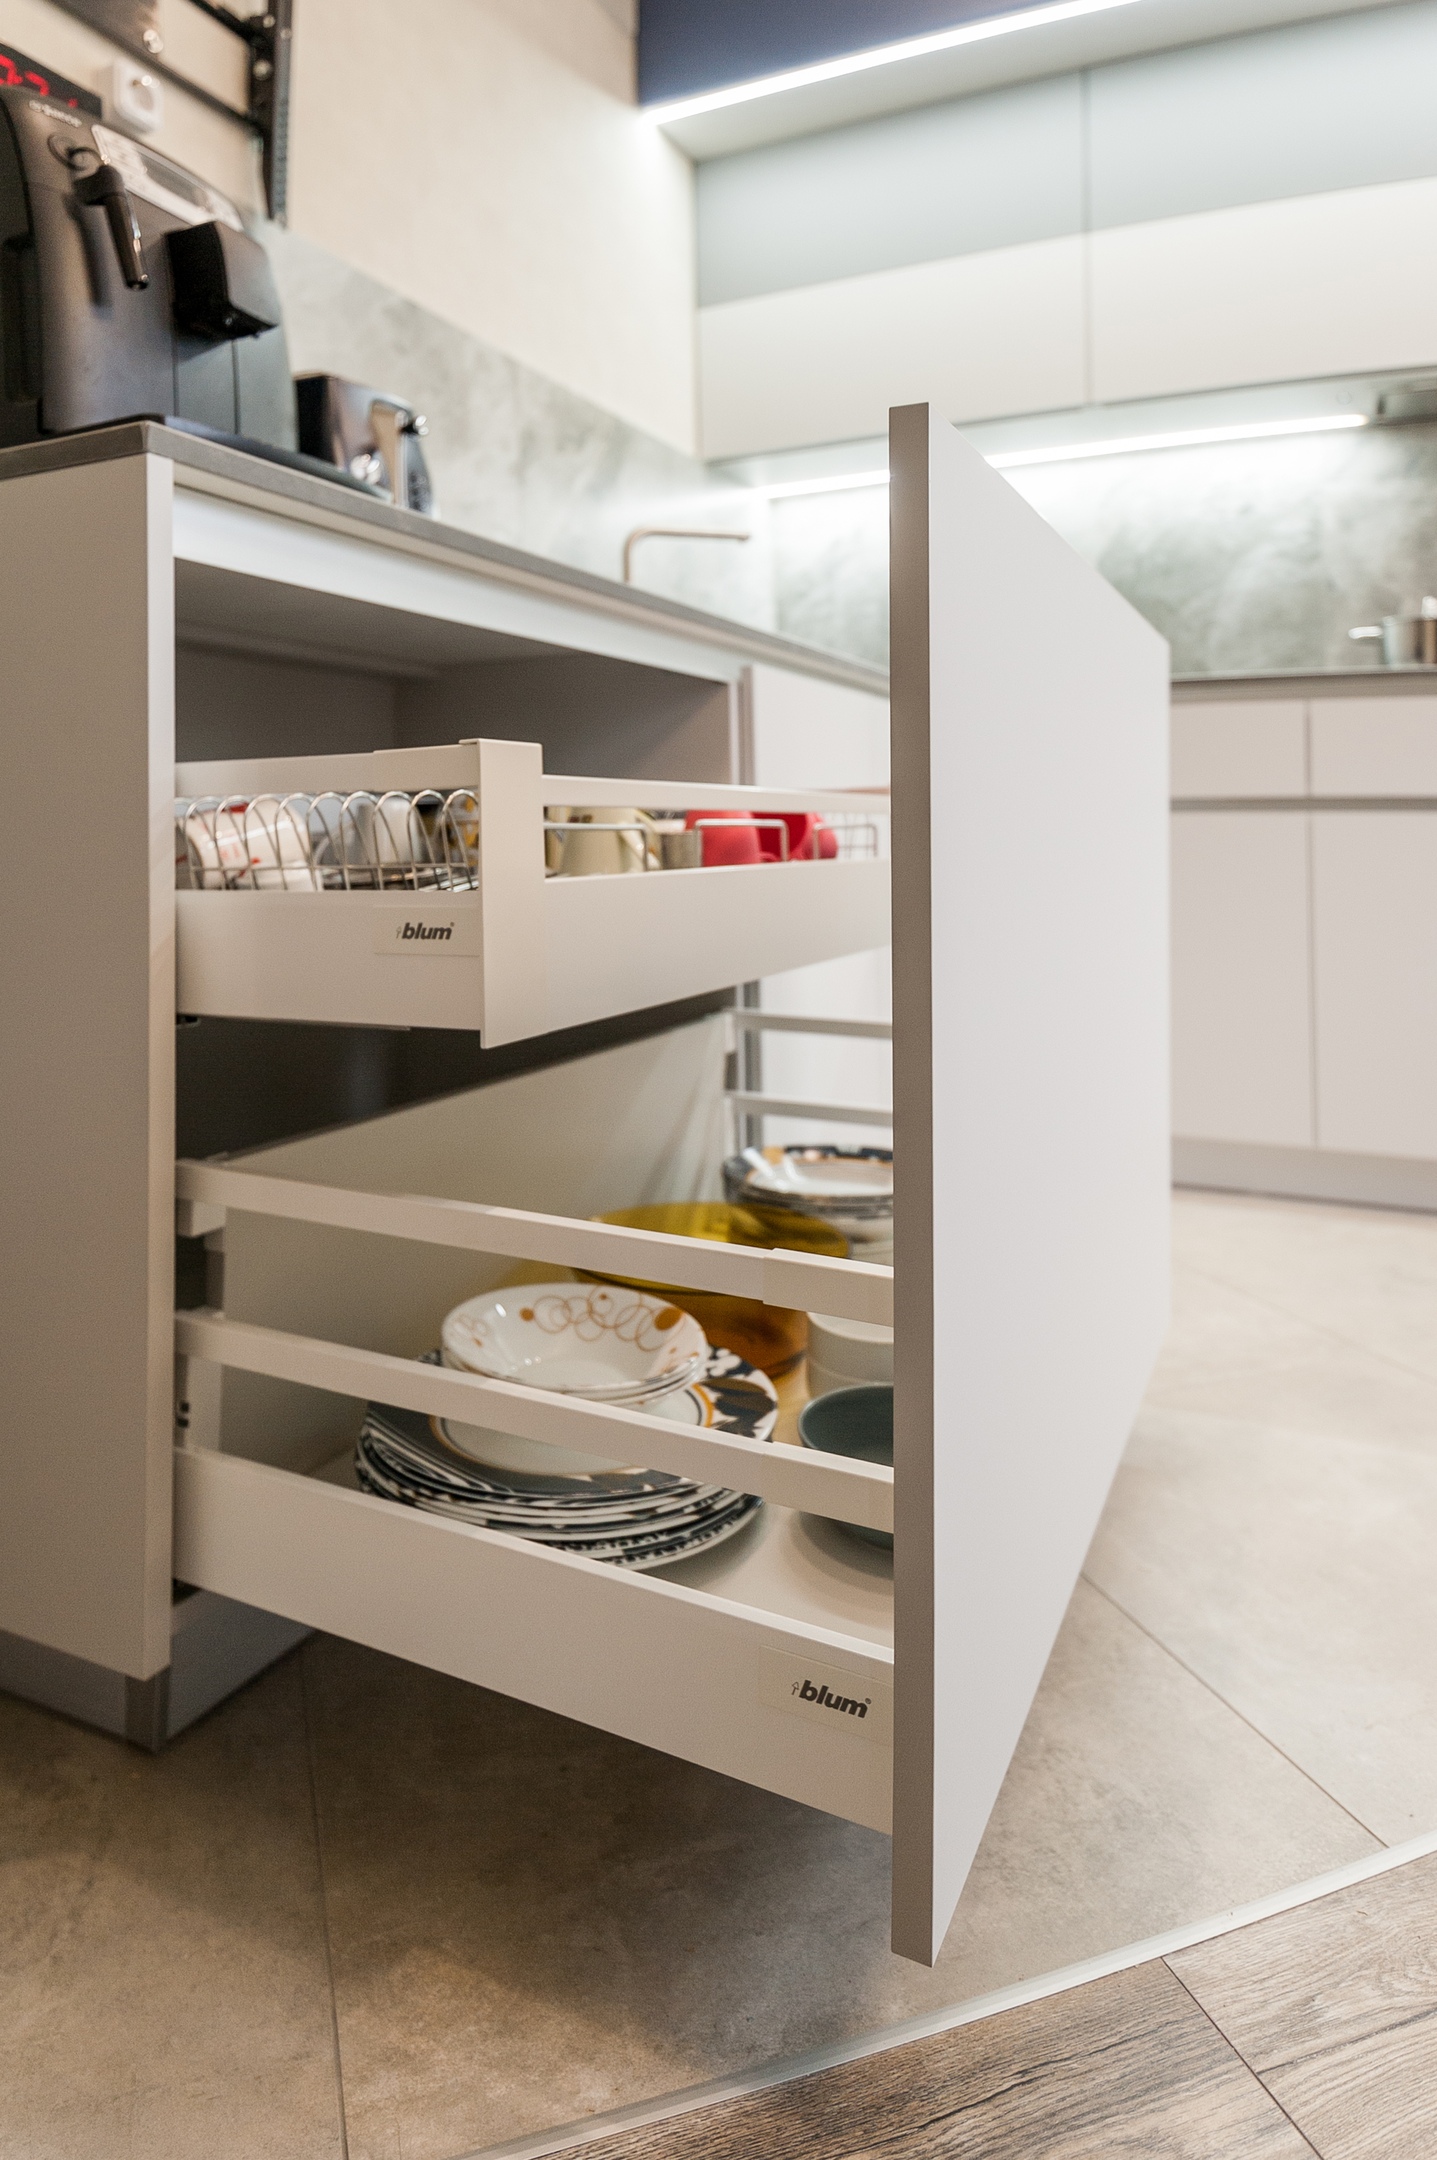 Белый кухонный гарнитур-Бело-синяя кухня «Модель 780»-фото5